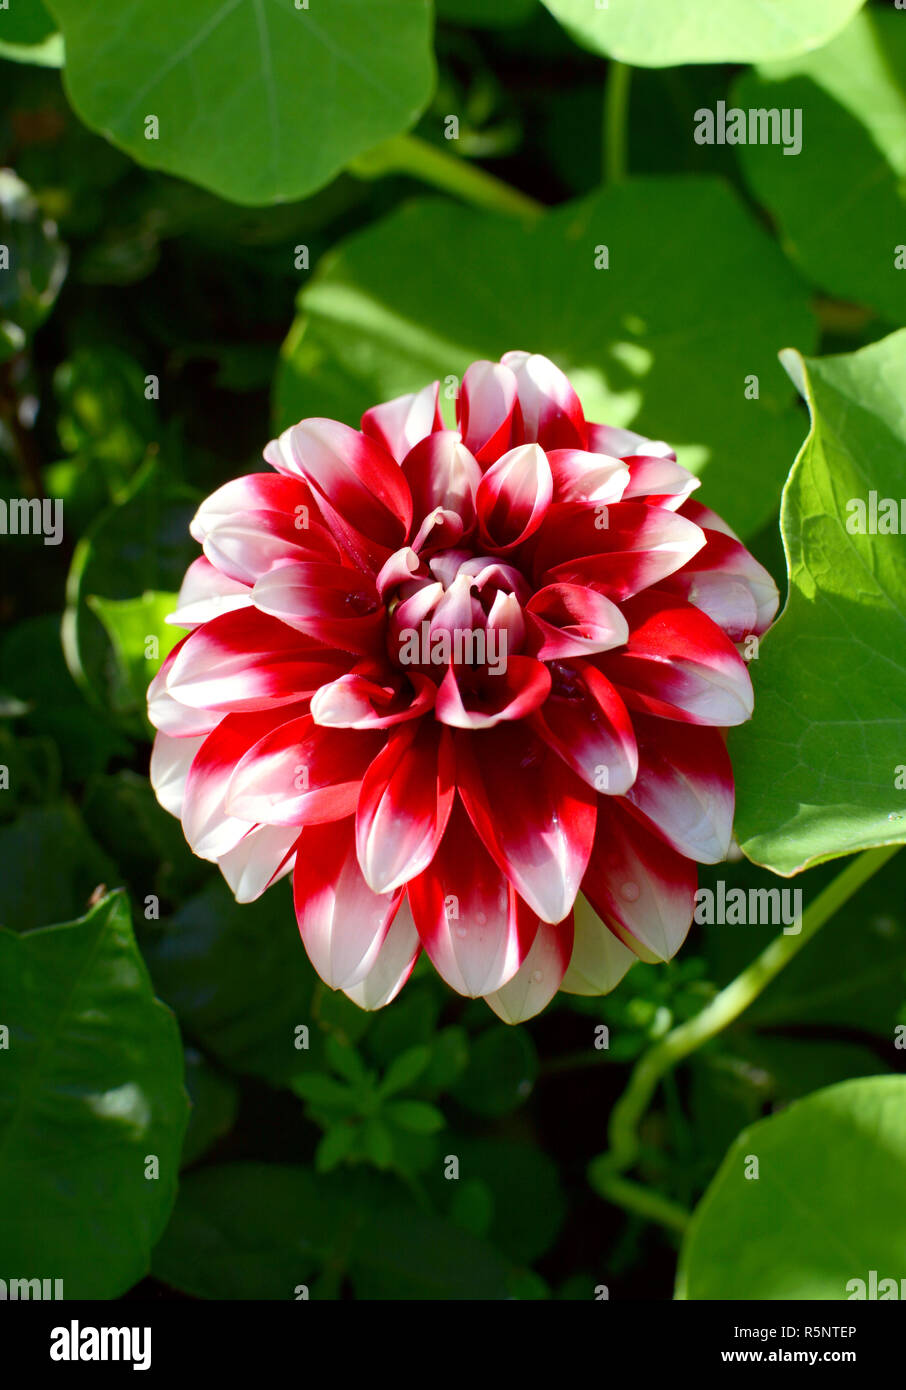 Red dahlia fiore bianco con petali a punta Foto Stock